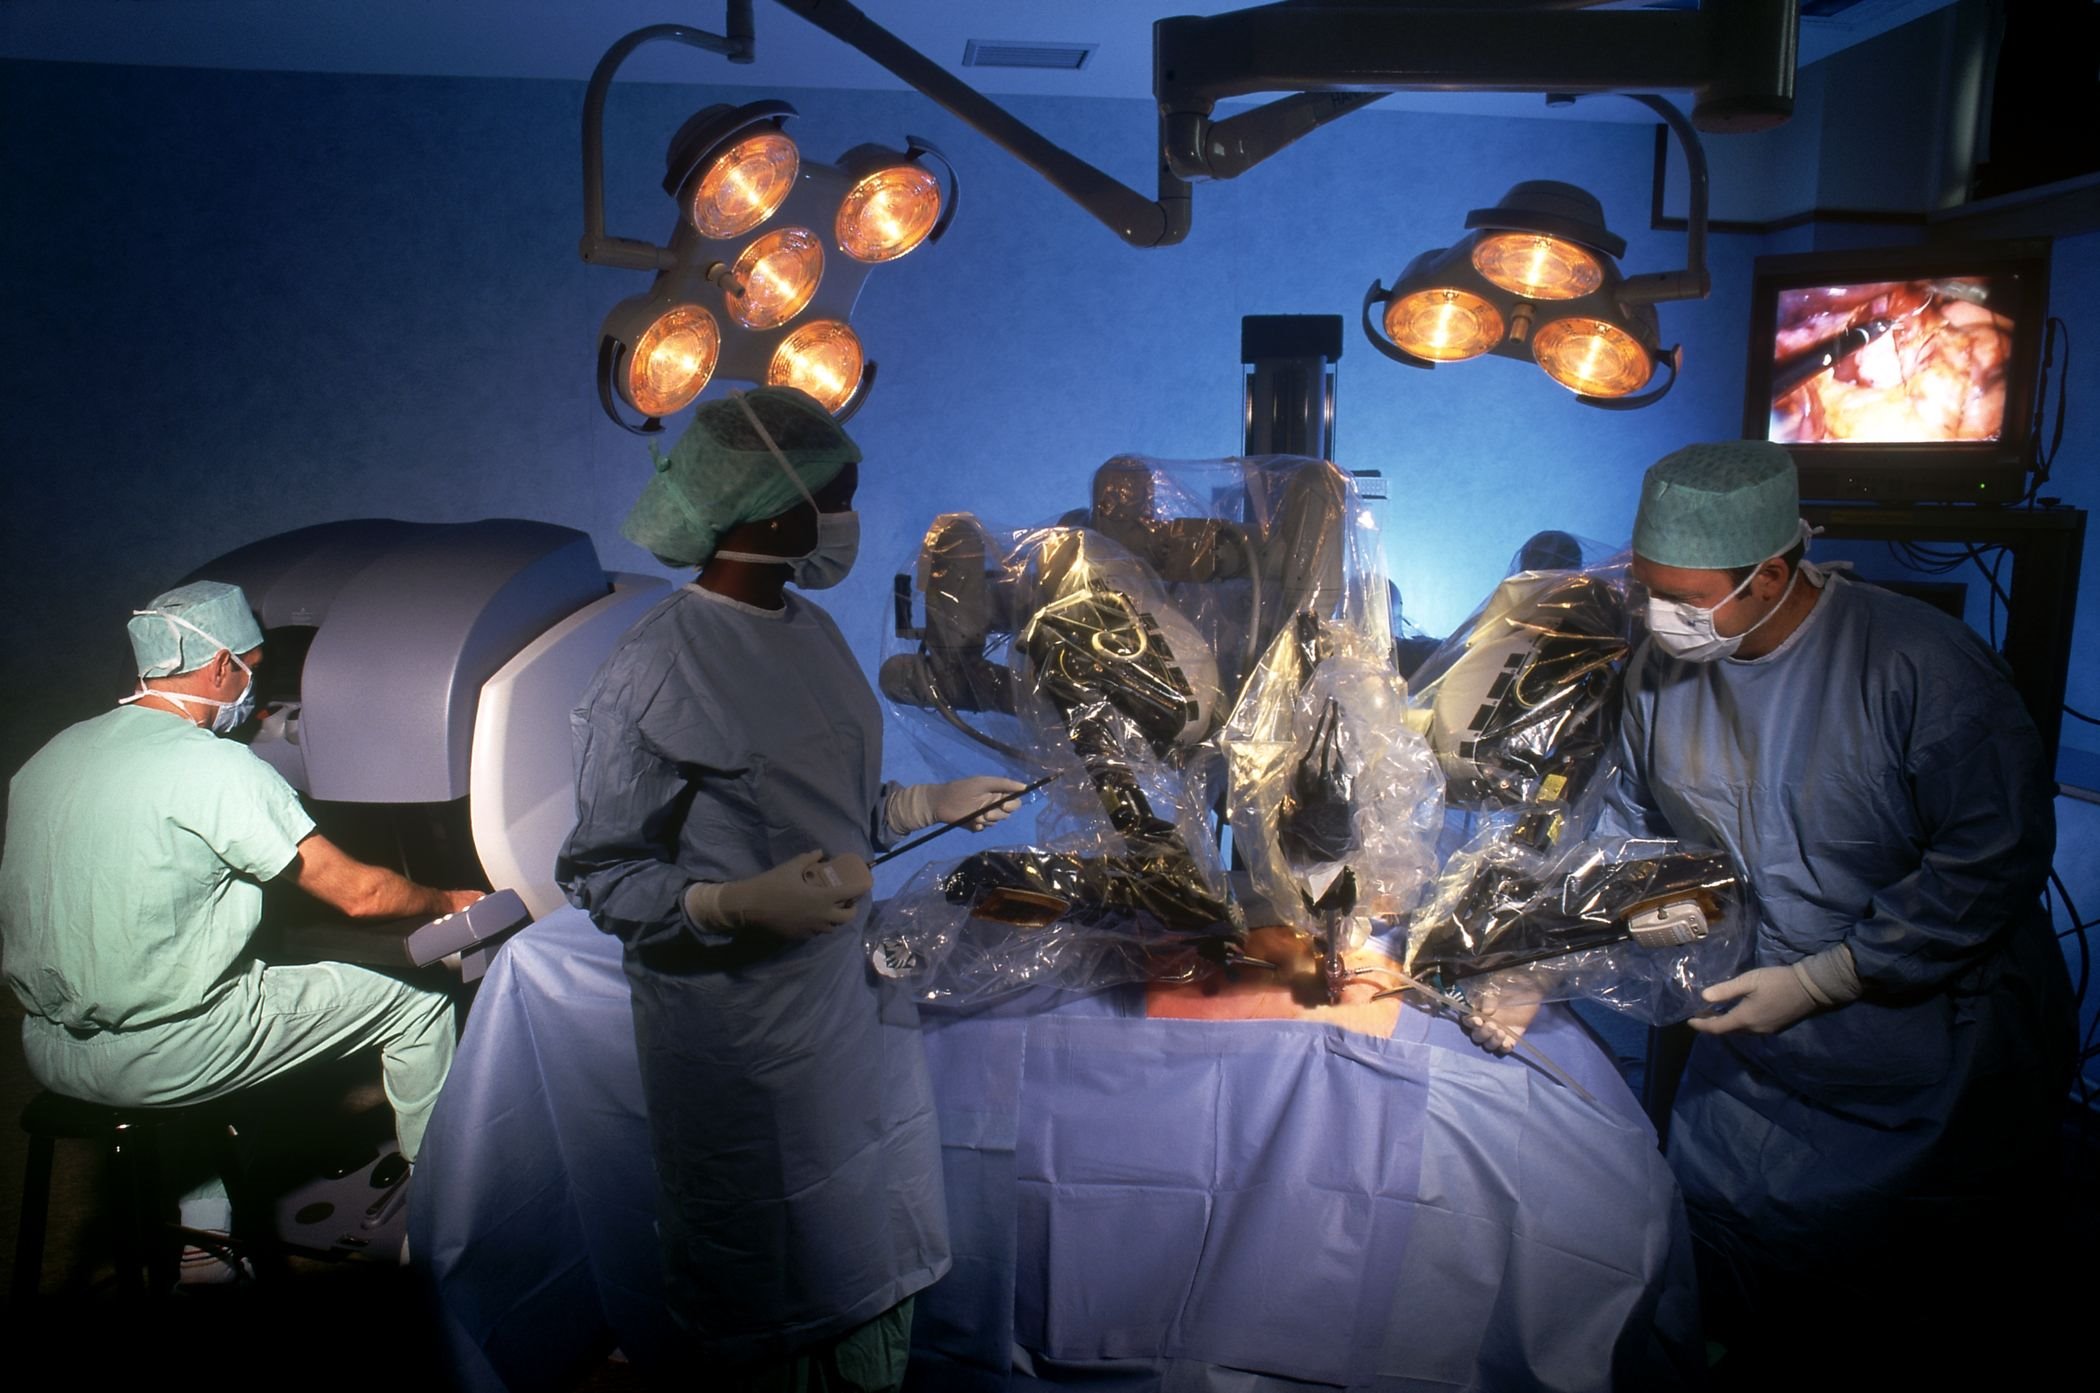 Premiera medicala la Cluj: transplant de rinichi cu robotul 